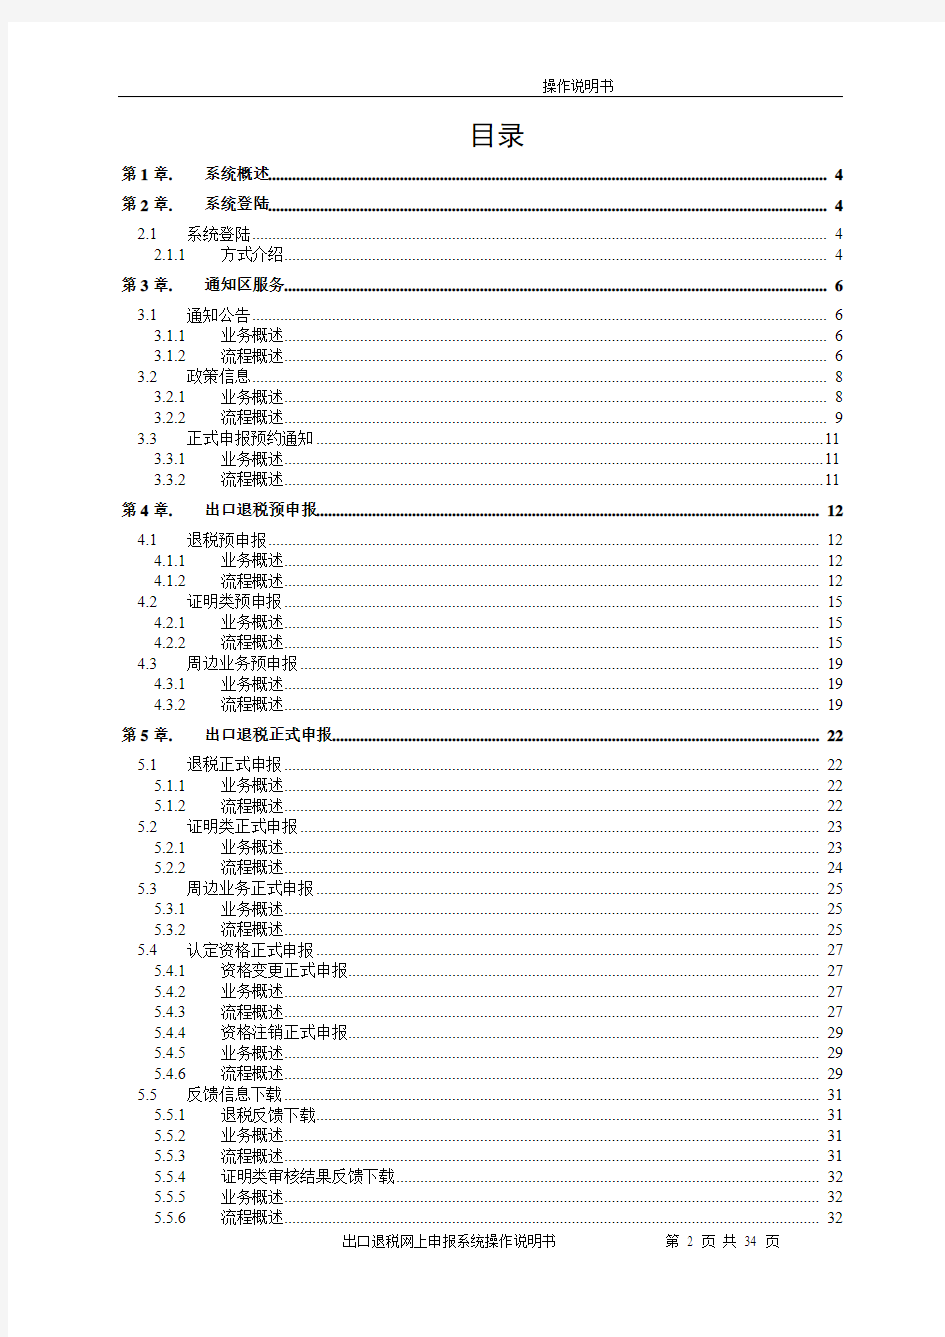 上海市出口退税网上申报系统V2.0纳税人端操作说明书